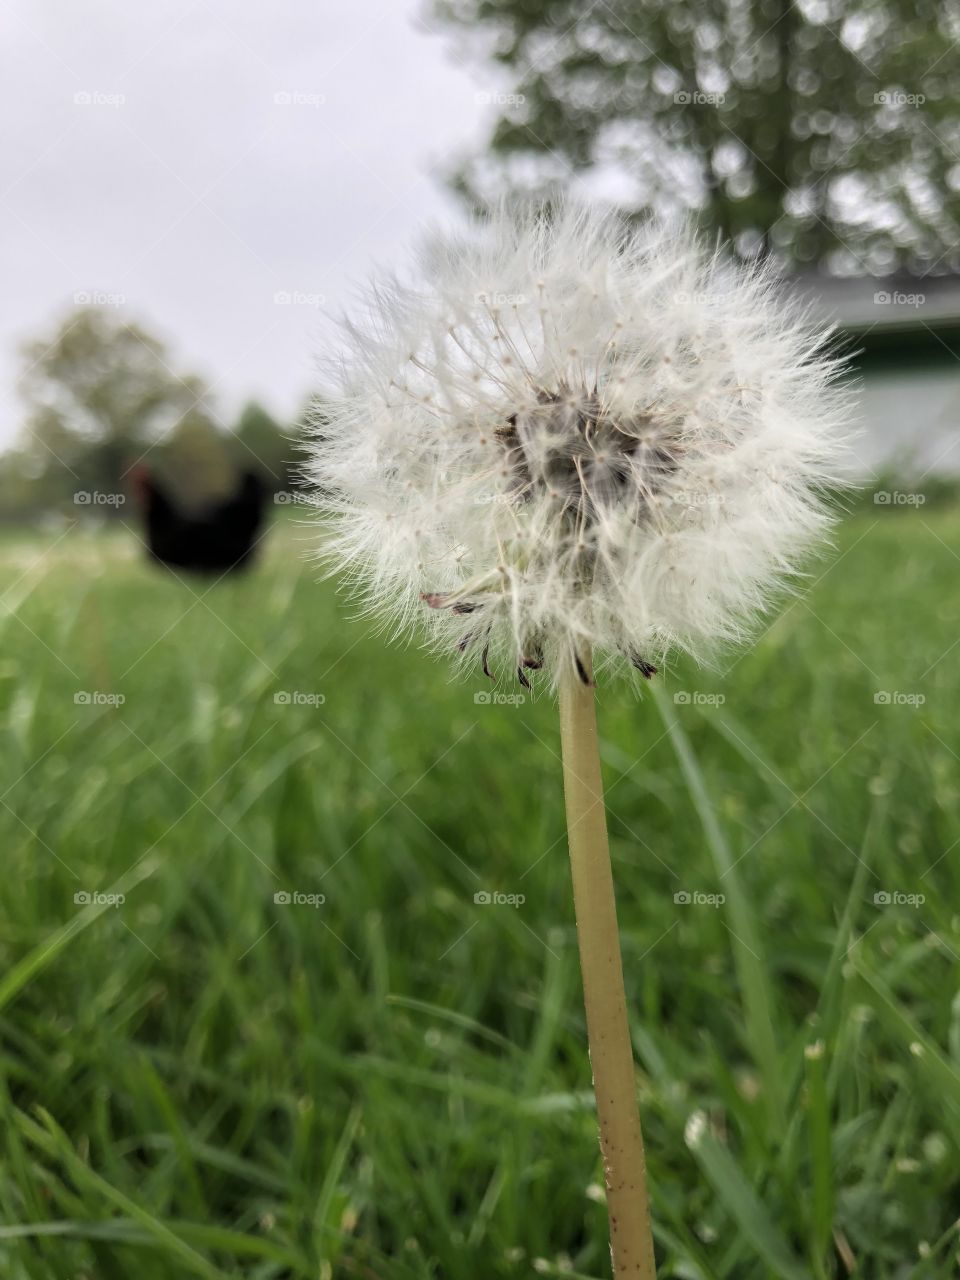 Make a wish (dandelion and chicken)